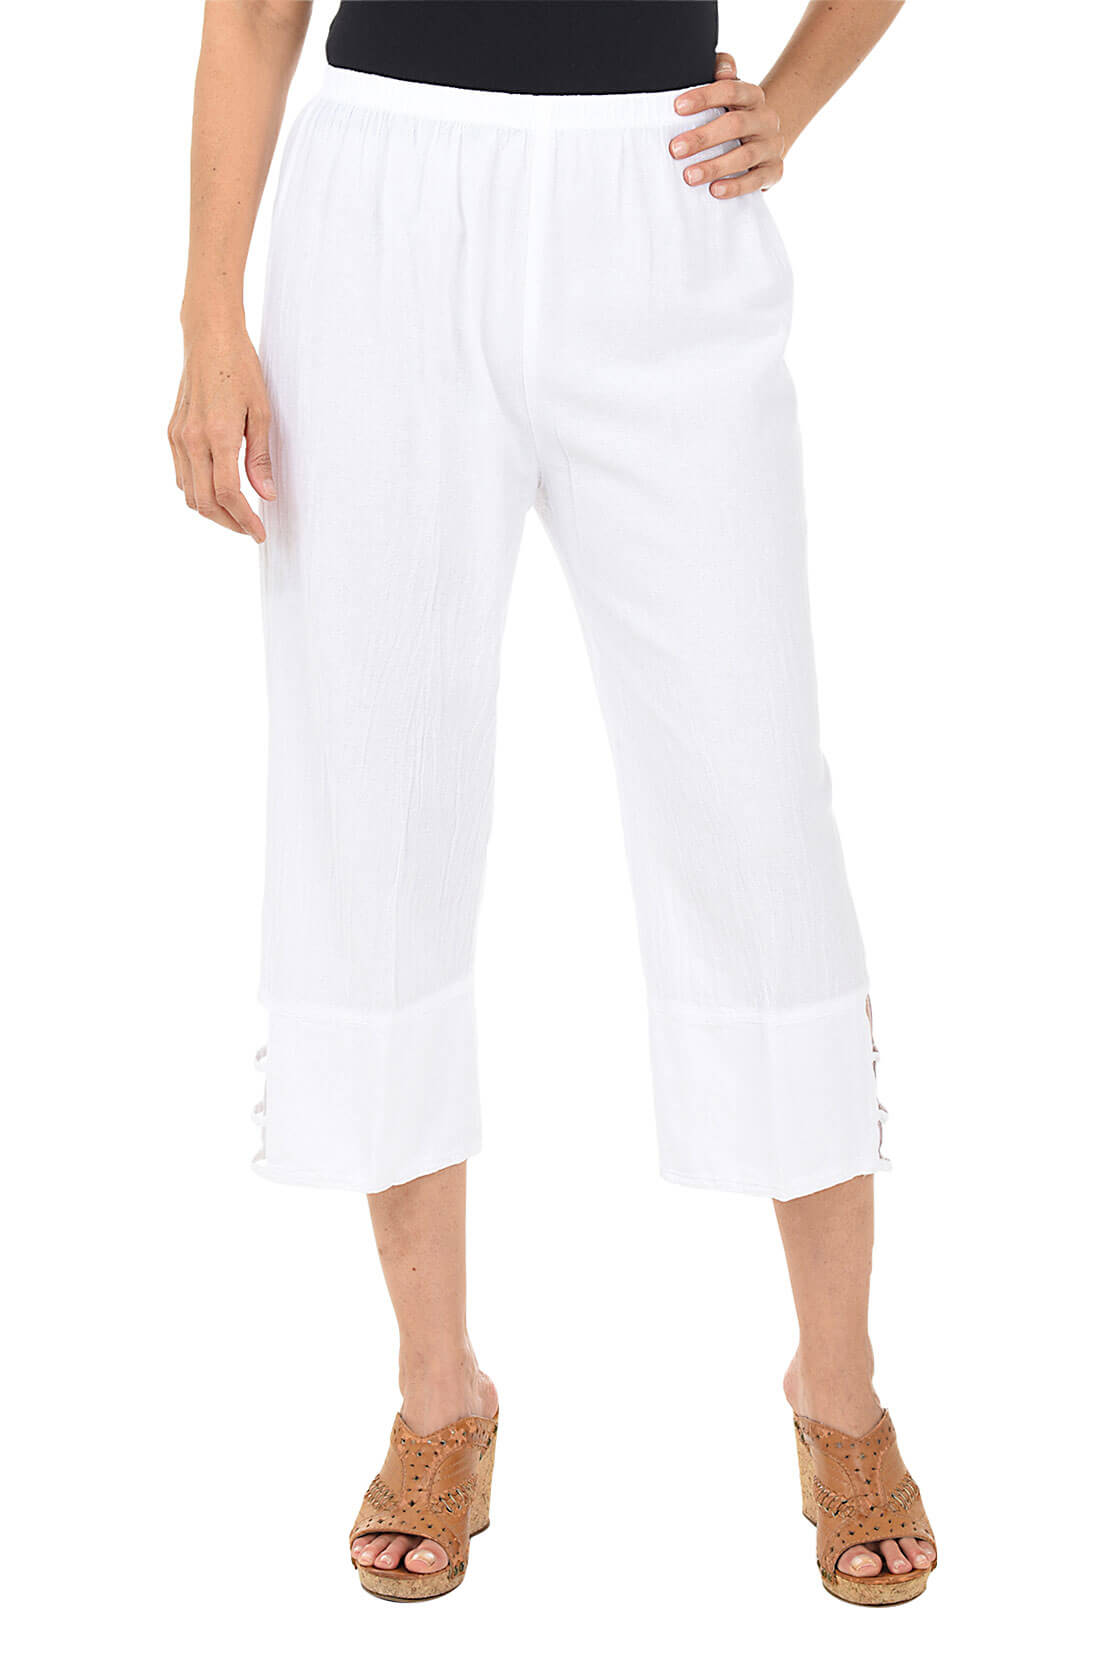 Plus Size Caprs For Women - Buy Plus Size Capri Pants | Amydus